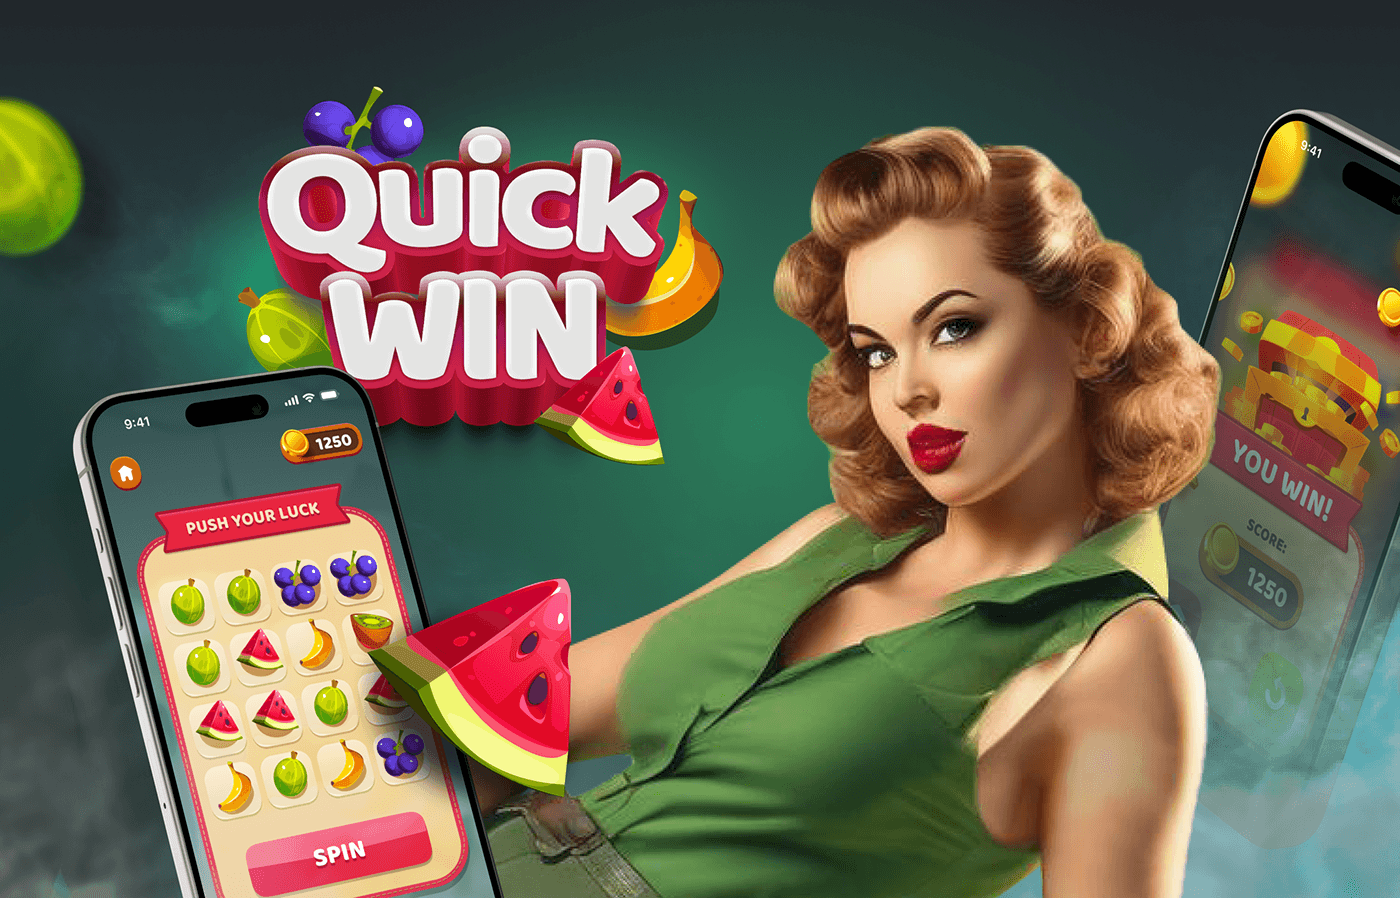 game design  Mobile app ui design UI/UX Slots gambling slot spine Casino Online Gambling games